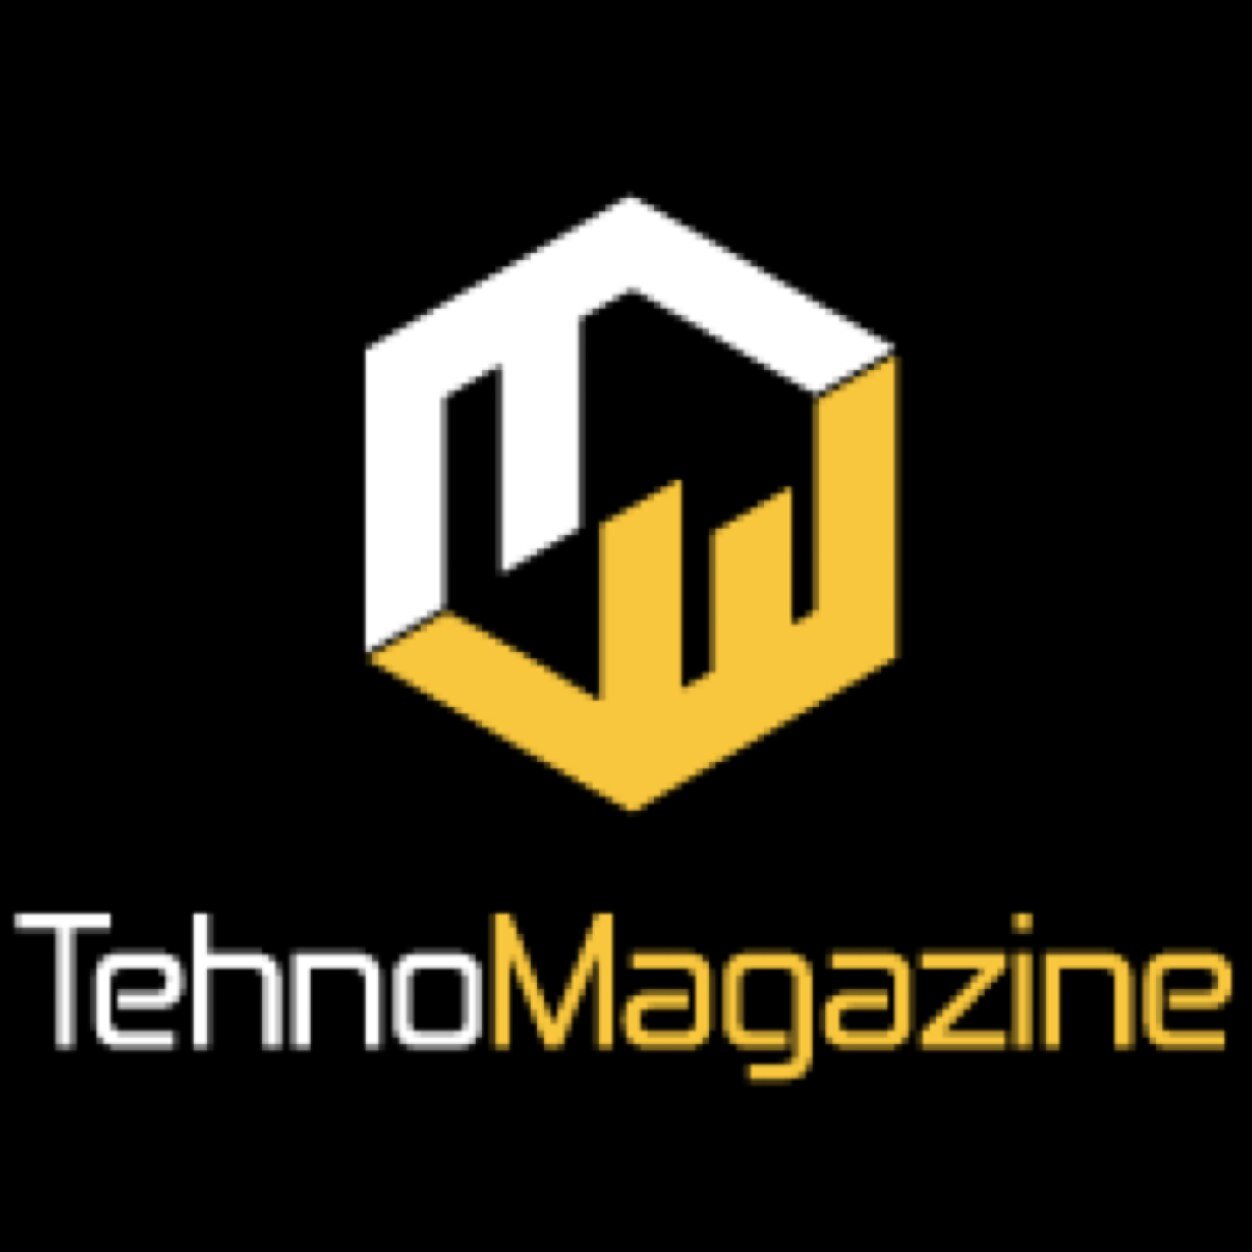 Tehno Magazine je specijalizovani internet magazin o novim Tehnologijama